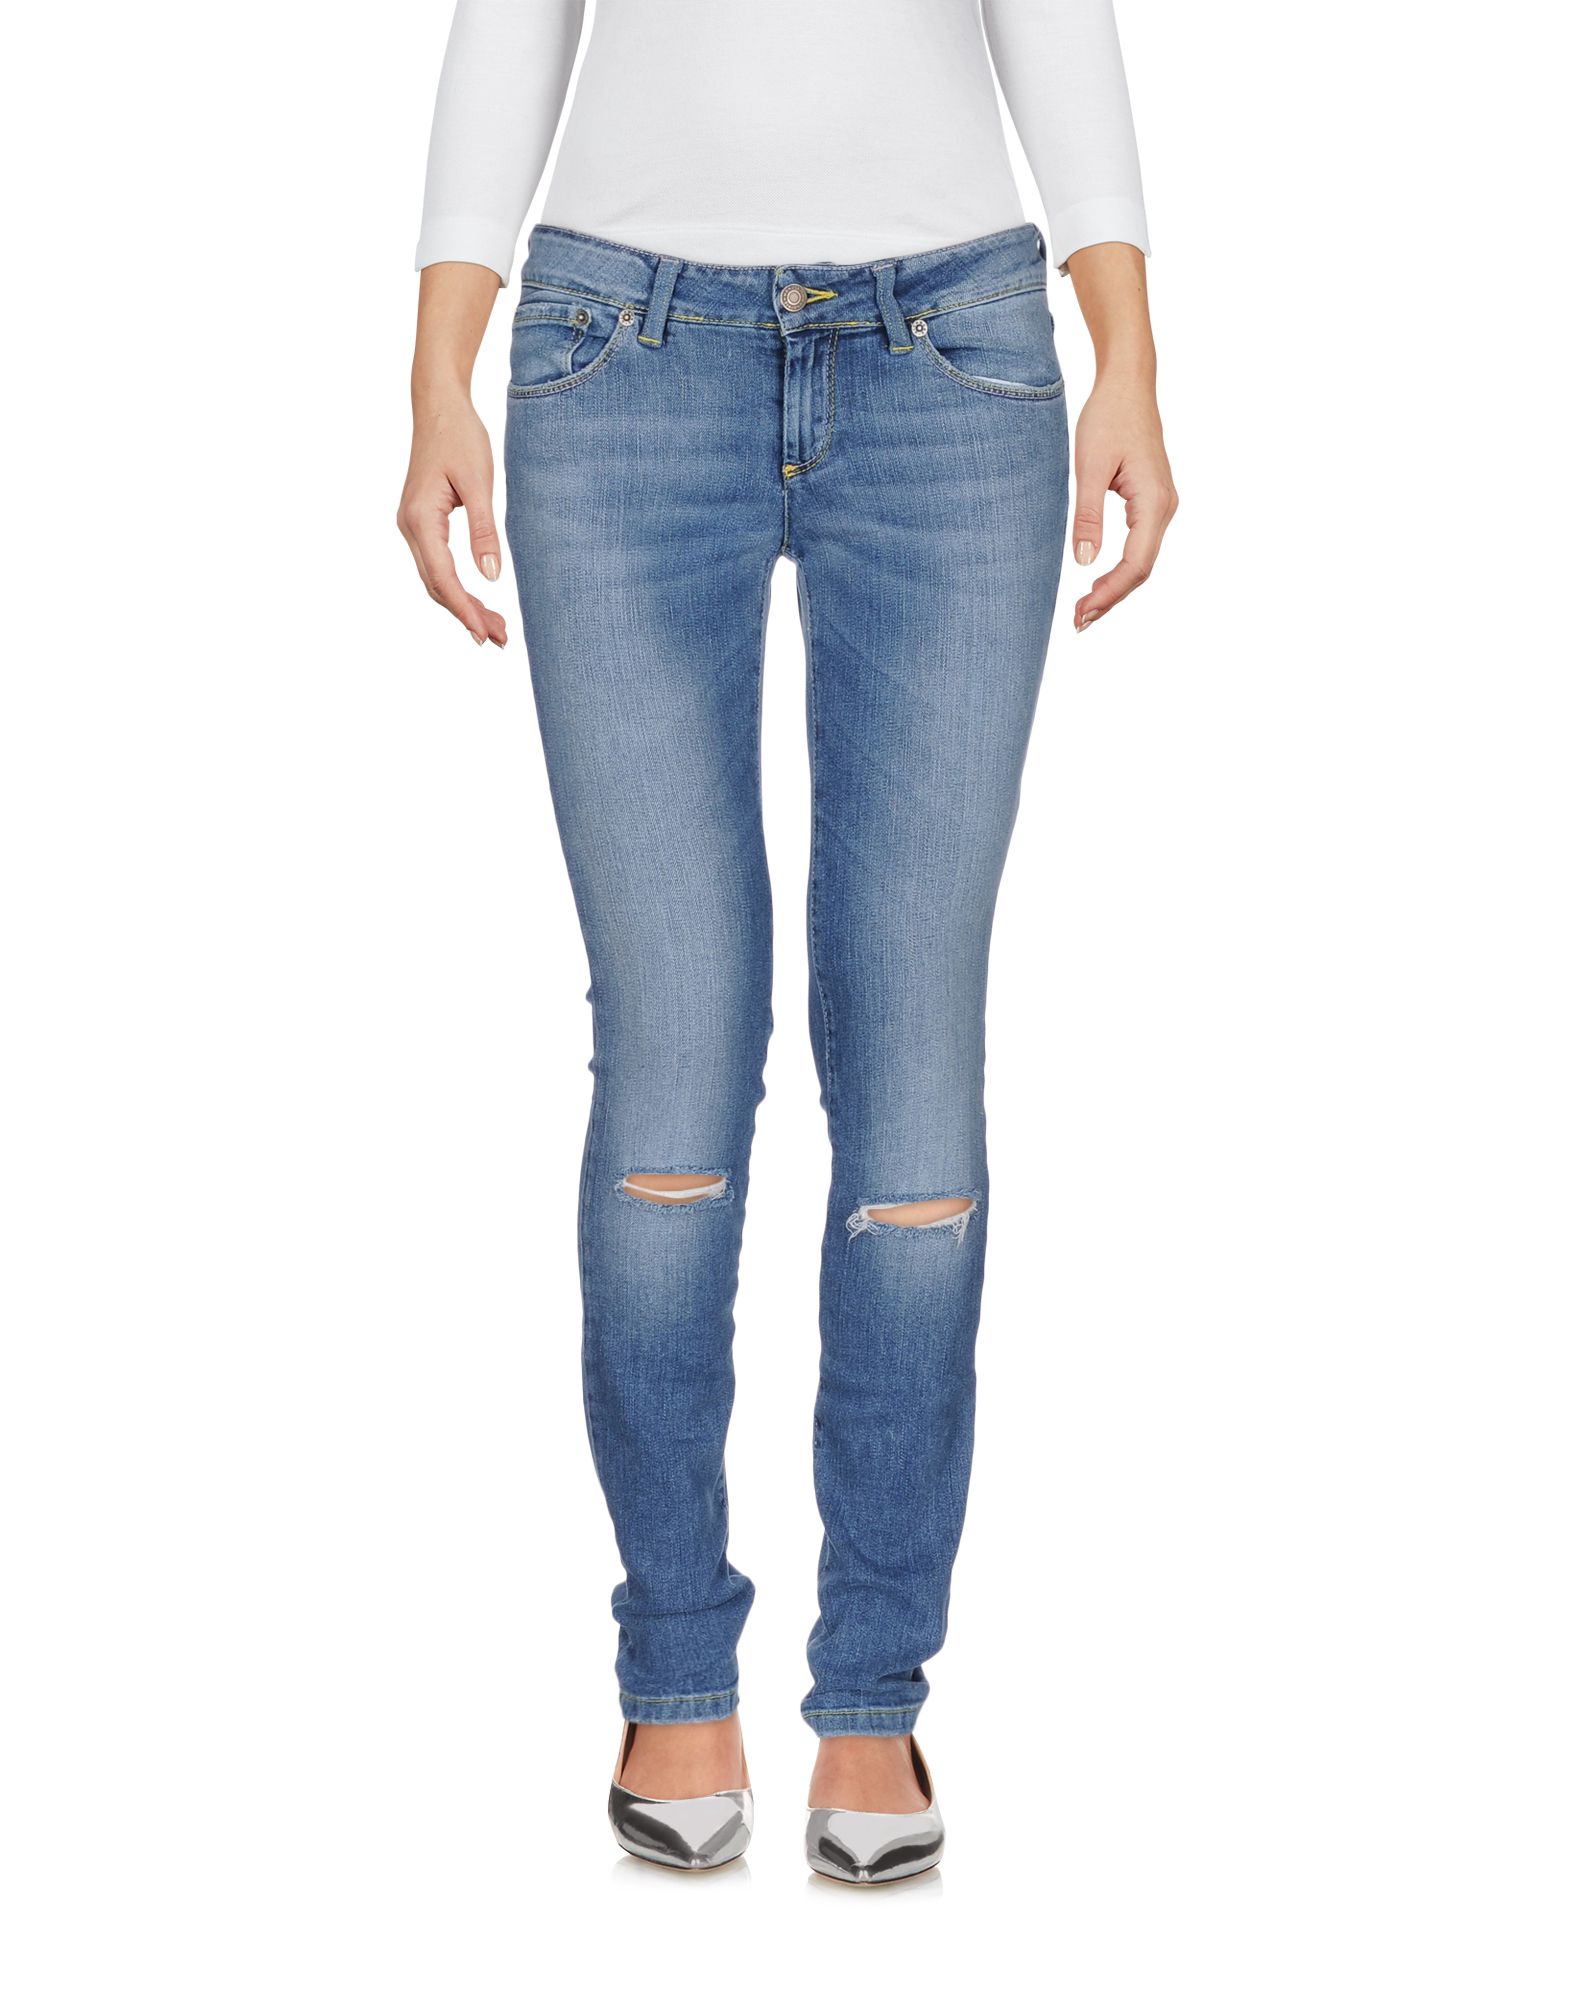 Селвидж деним - что такое джинсы с селвиджем, виды, производство | selvedge denim jeans - фото и видео